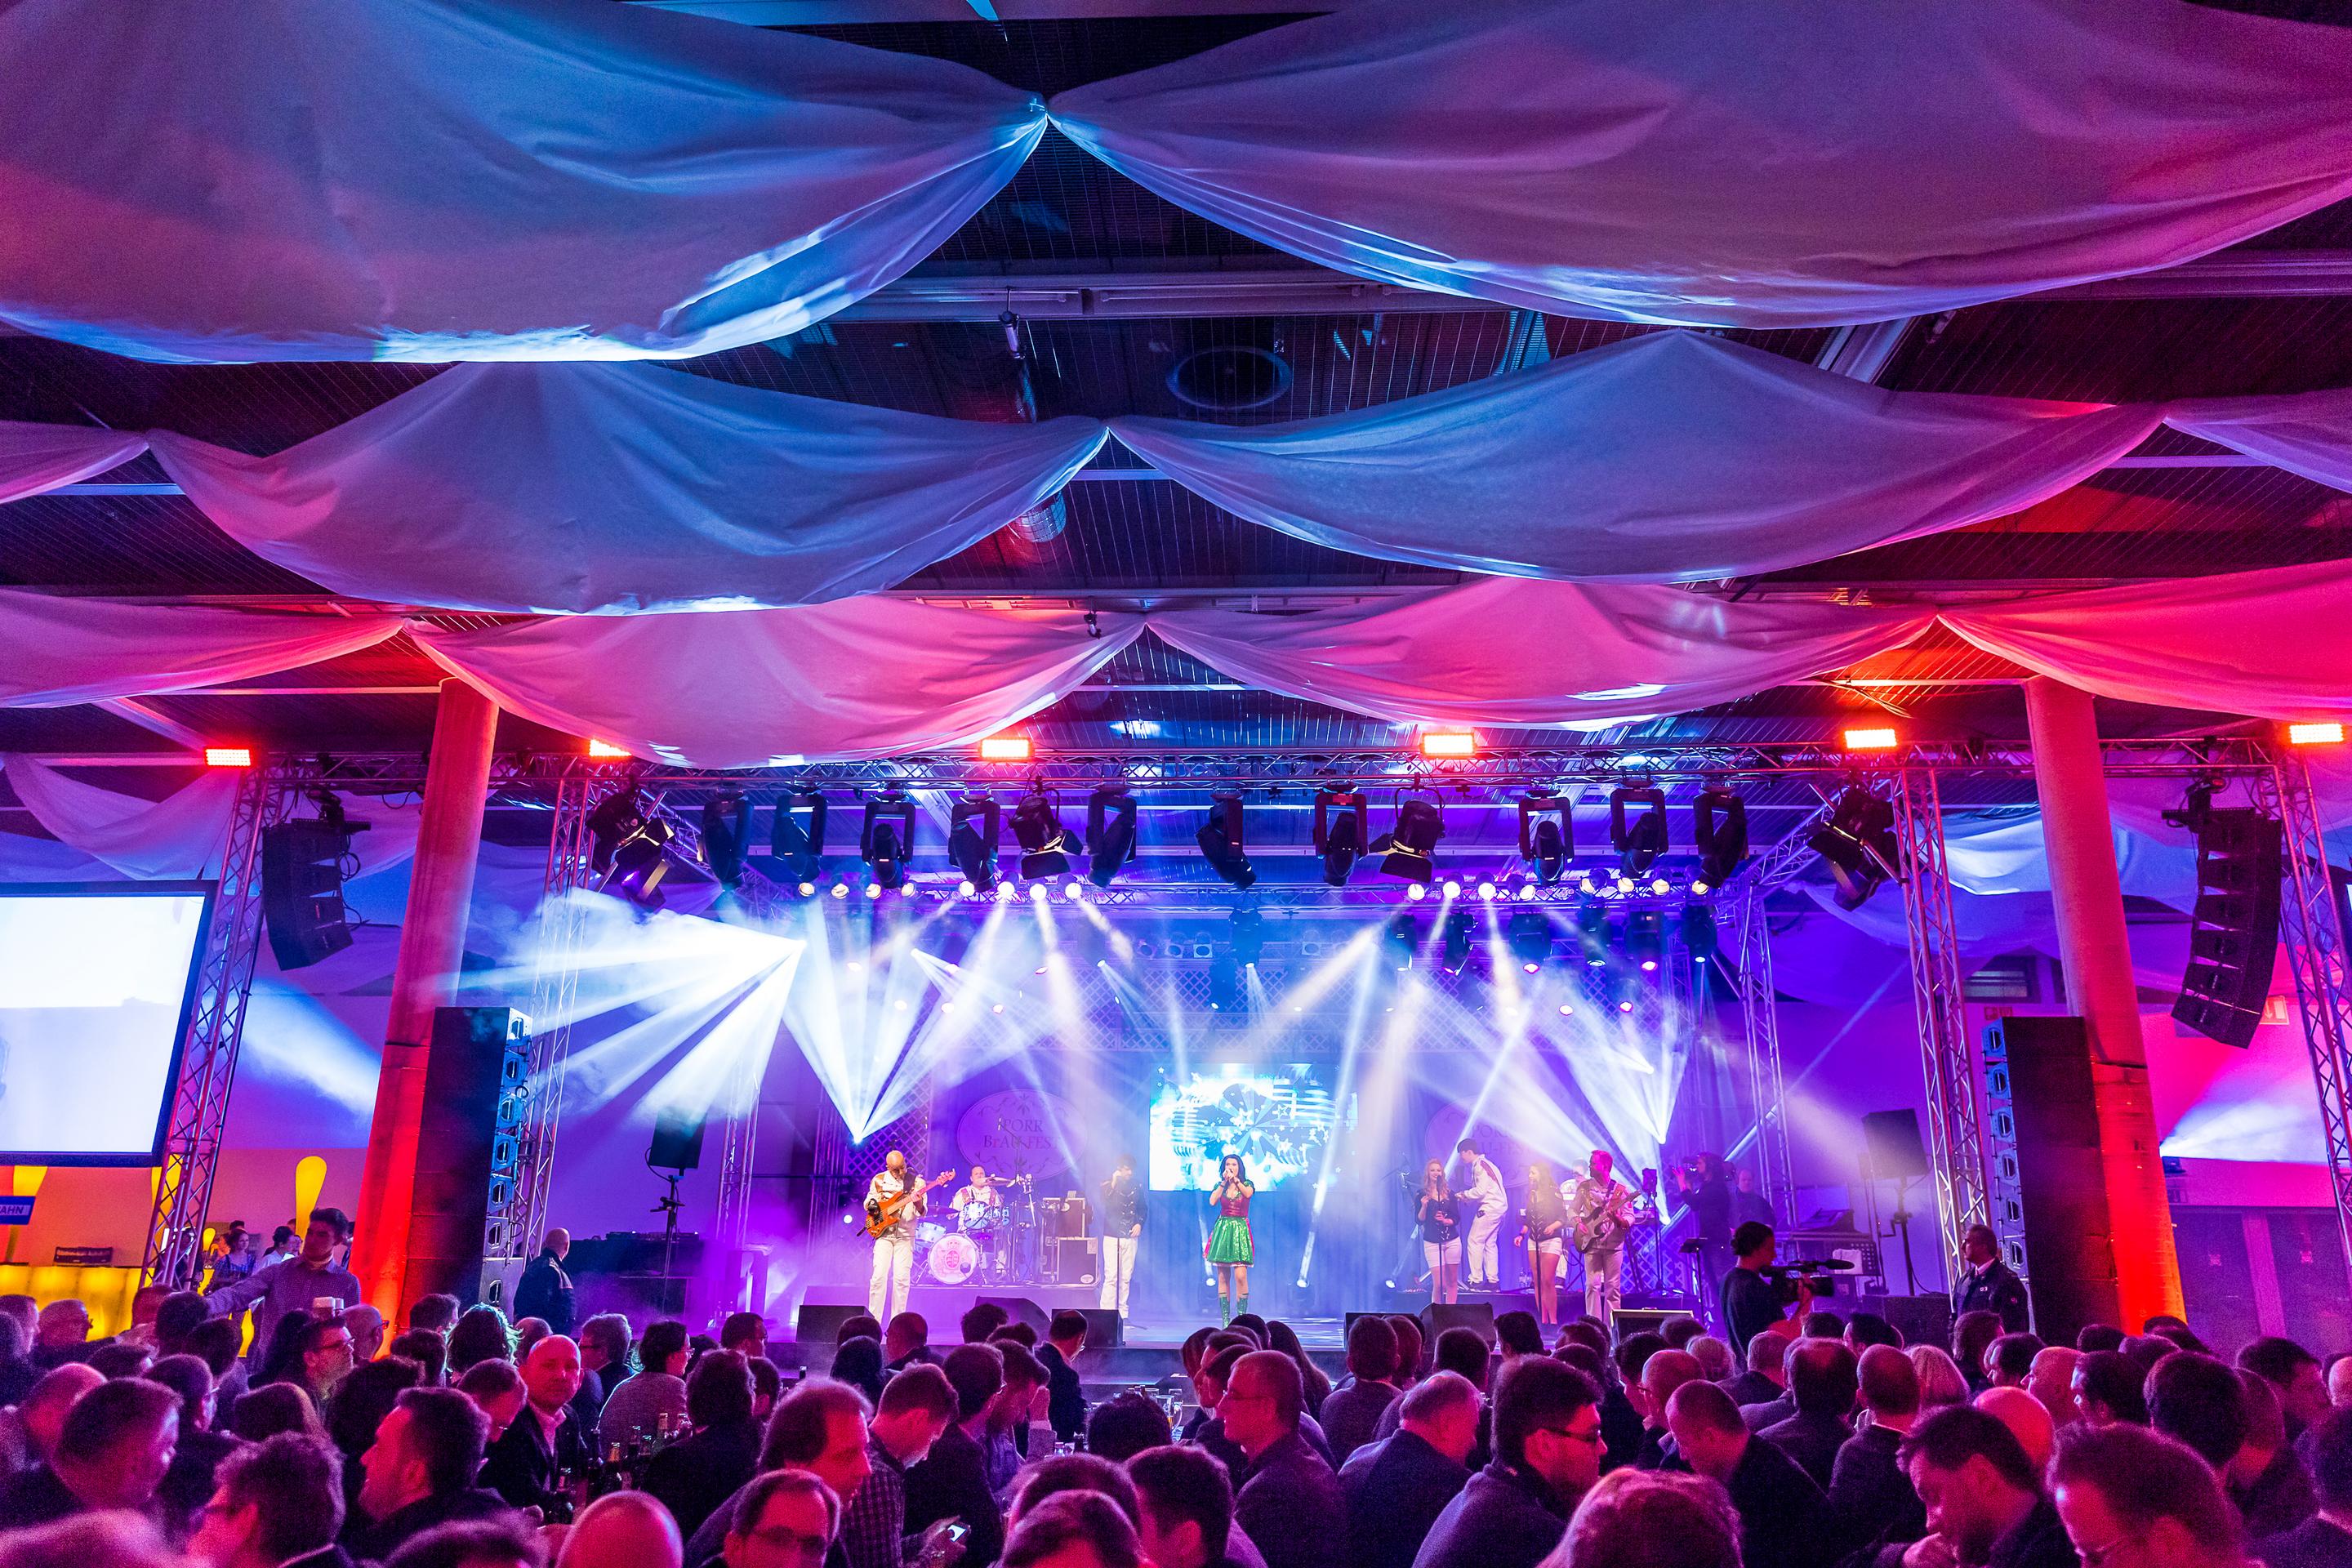 Foto: Halle im rot-blauen Licht mit Menschen bei einem Konzert